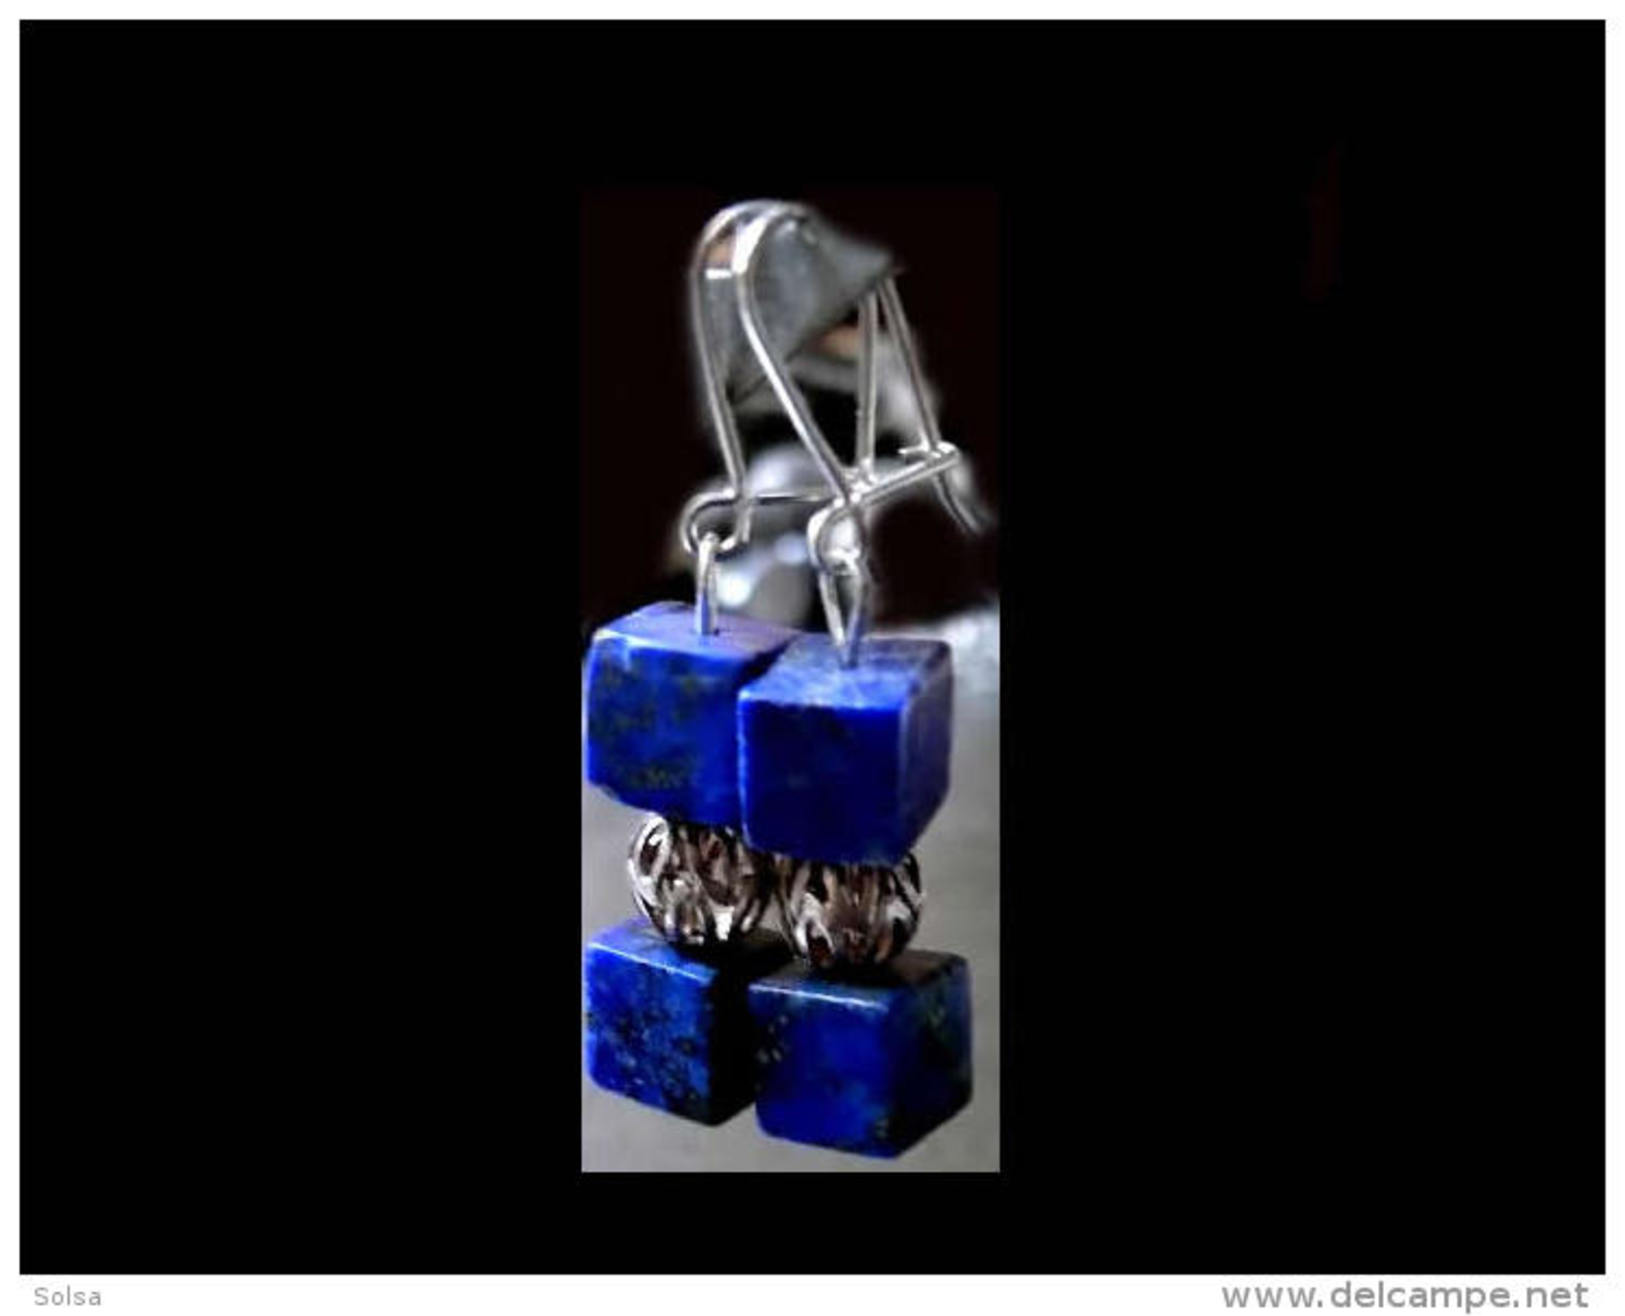 Superbes Boucles D'oreille Géométriqueqlapis Afghan / Afghani Lapis Lazuli And Iranian Gold Platted Silver Bead Earrings - Boucles D'oreilles